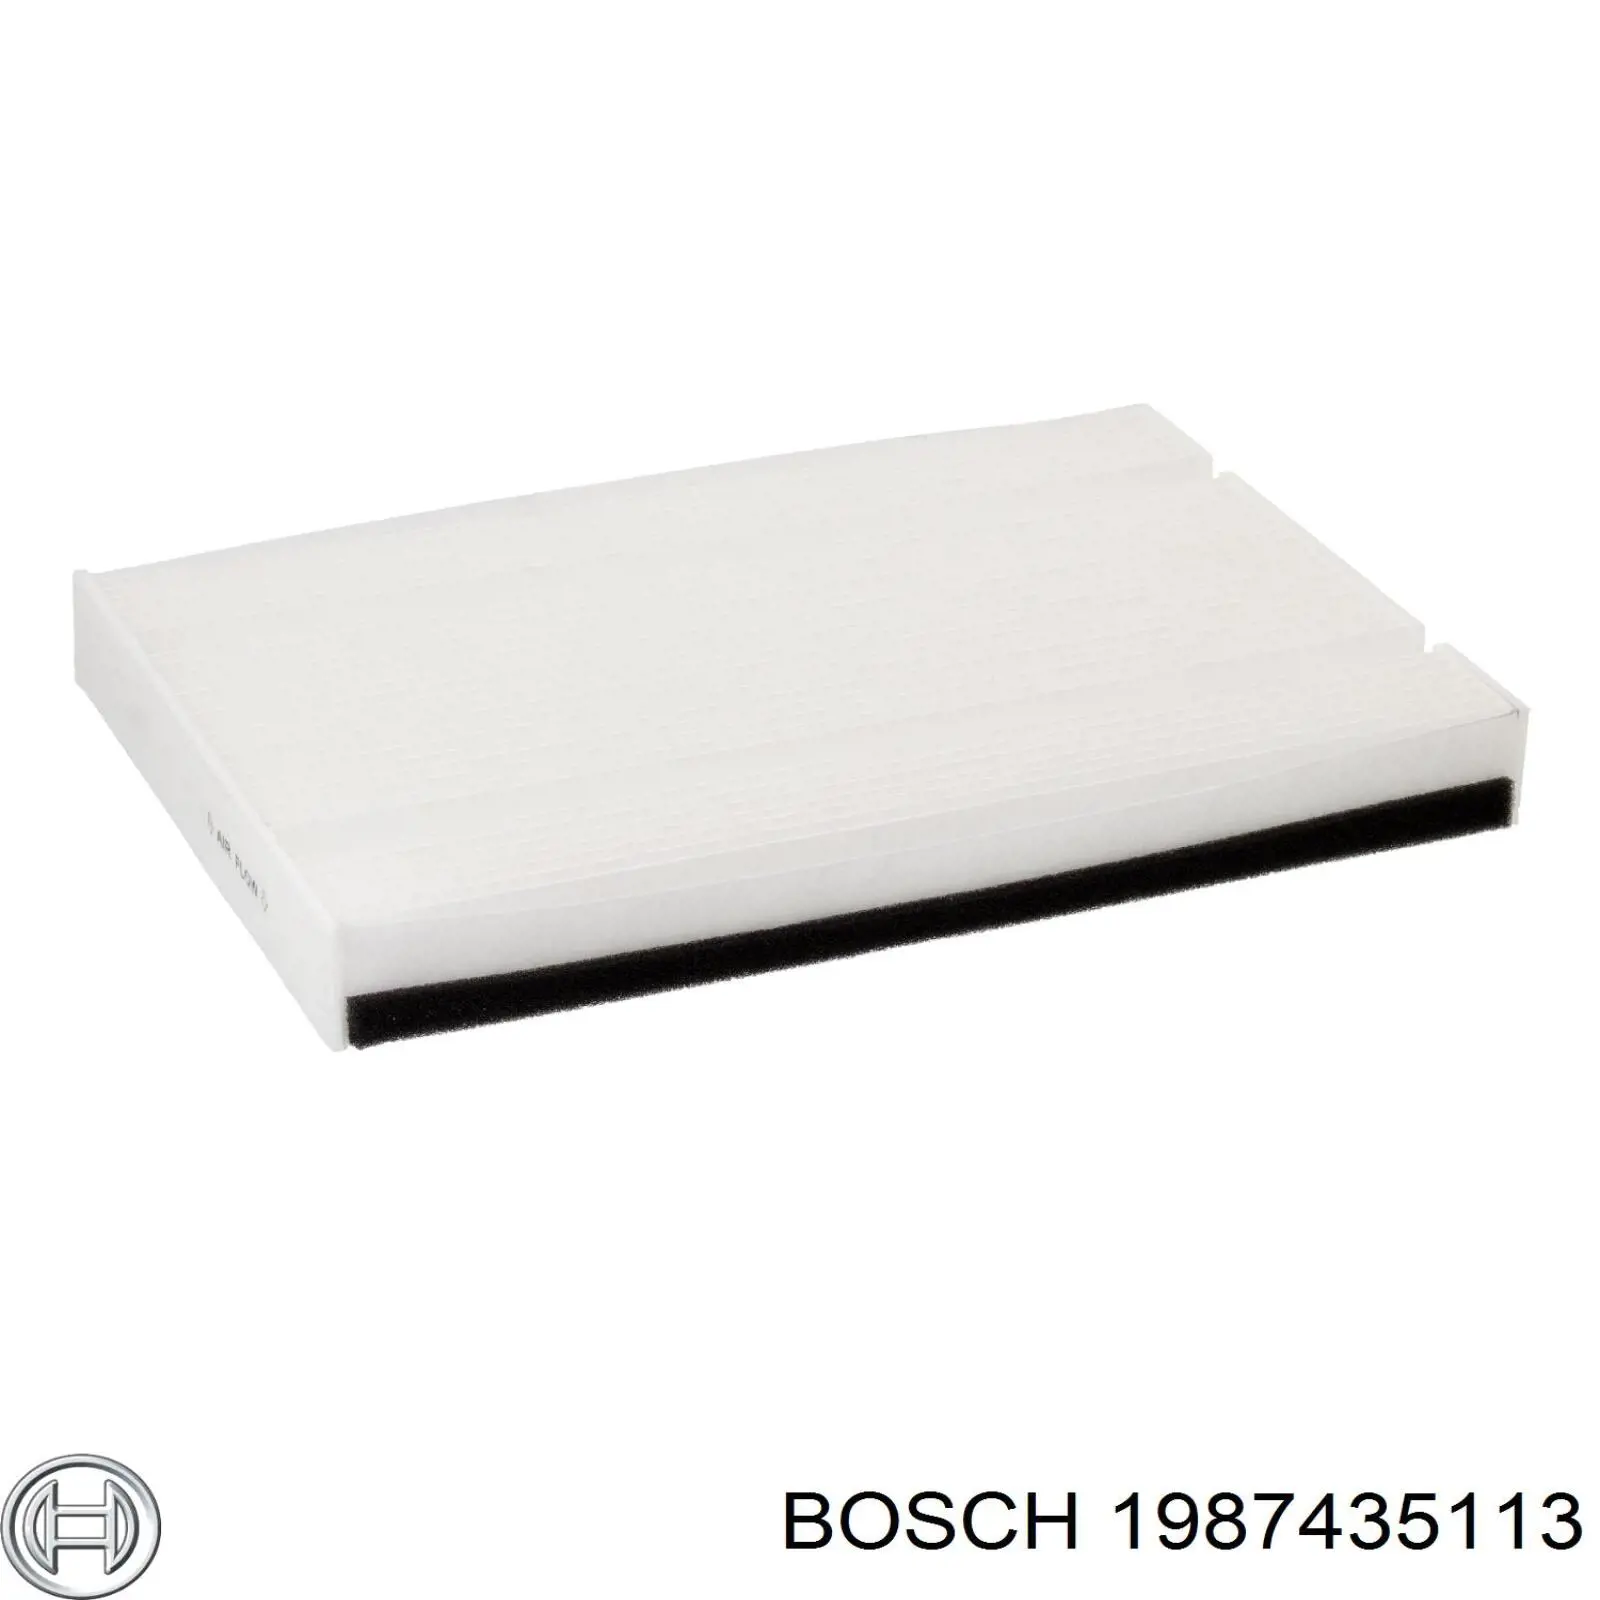 1987435113 Bosch filtro habitáculo